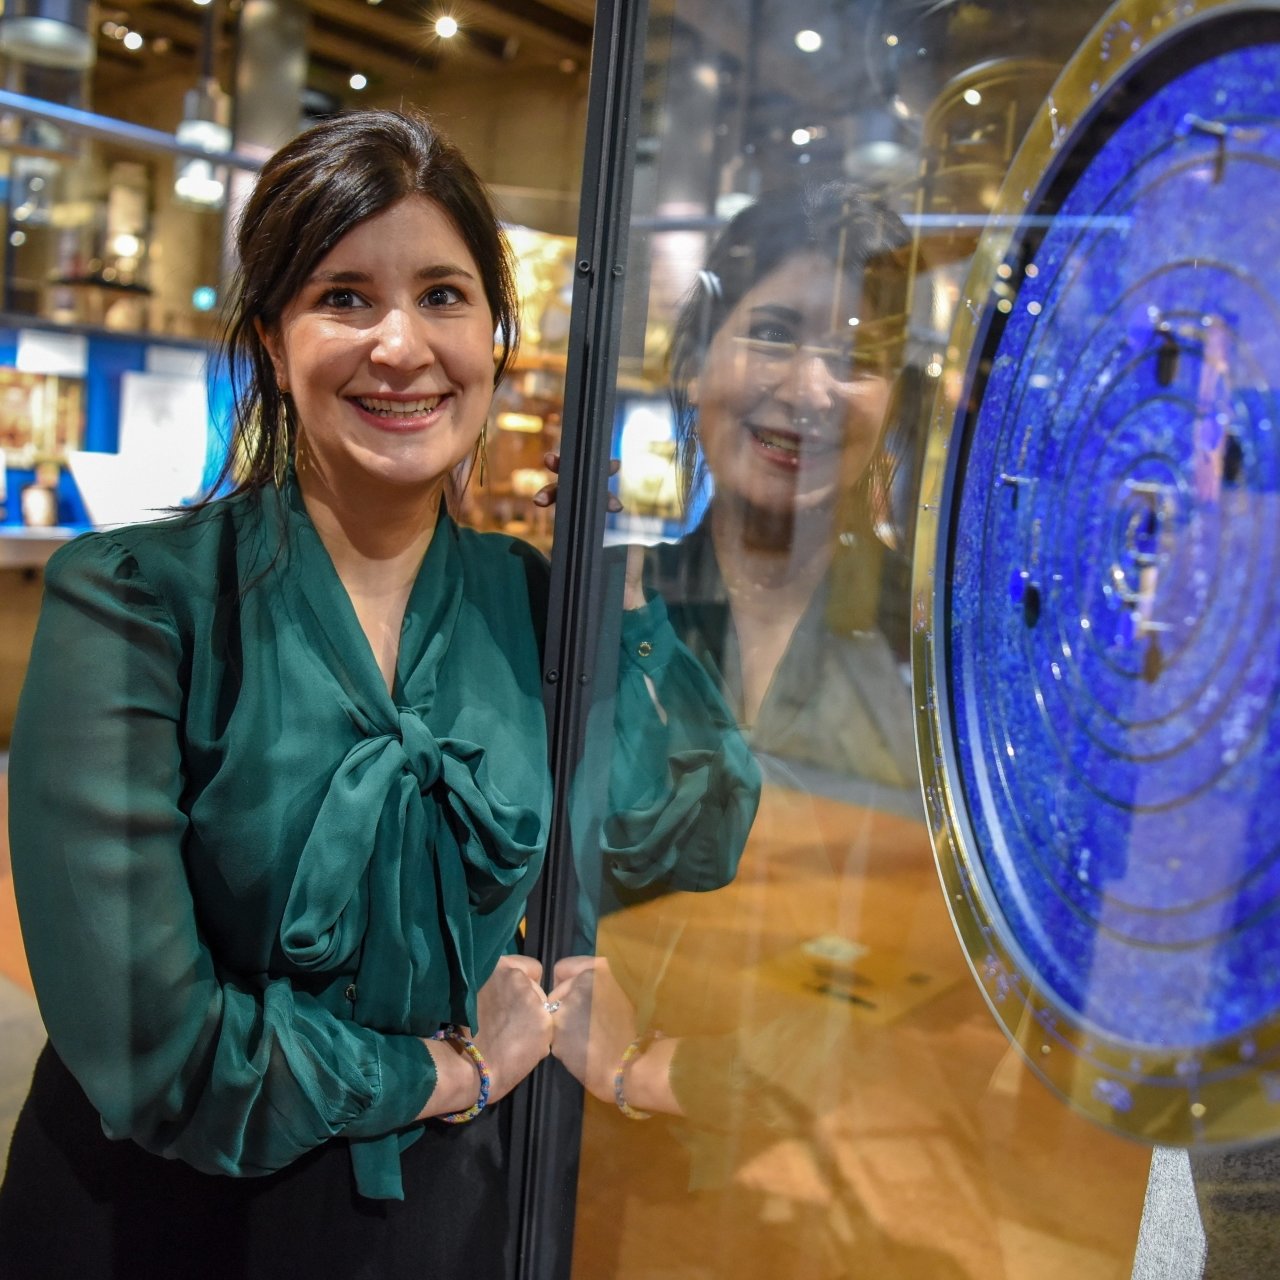 Nathalie Marielloni, conservatrice adjointe du Musée international d’horlogerie, fera la présentation de l’horlogerie à l’époque baroque.